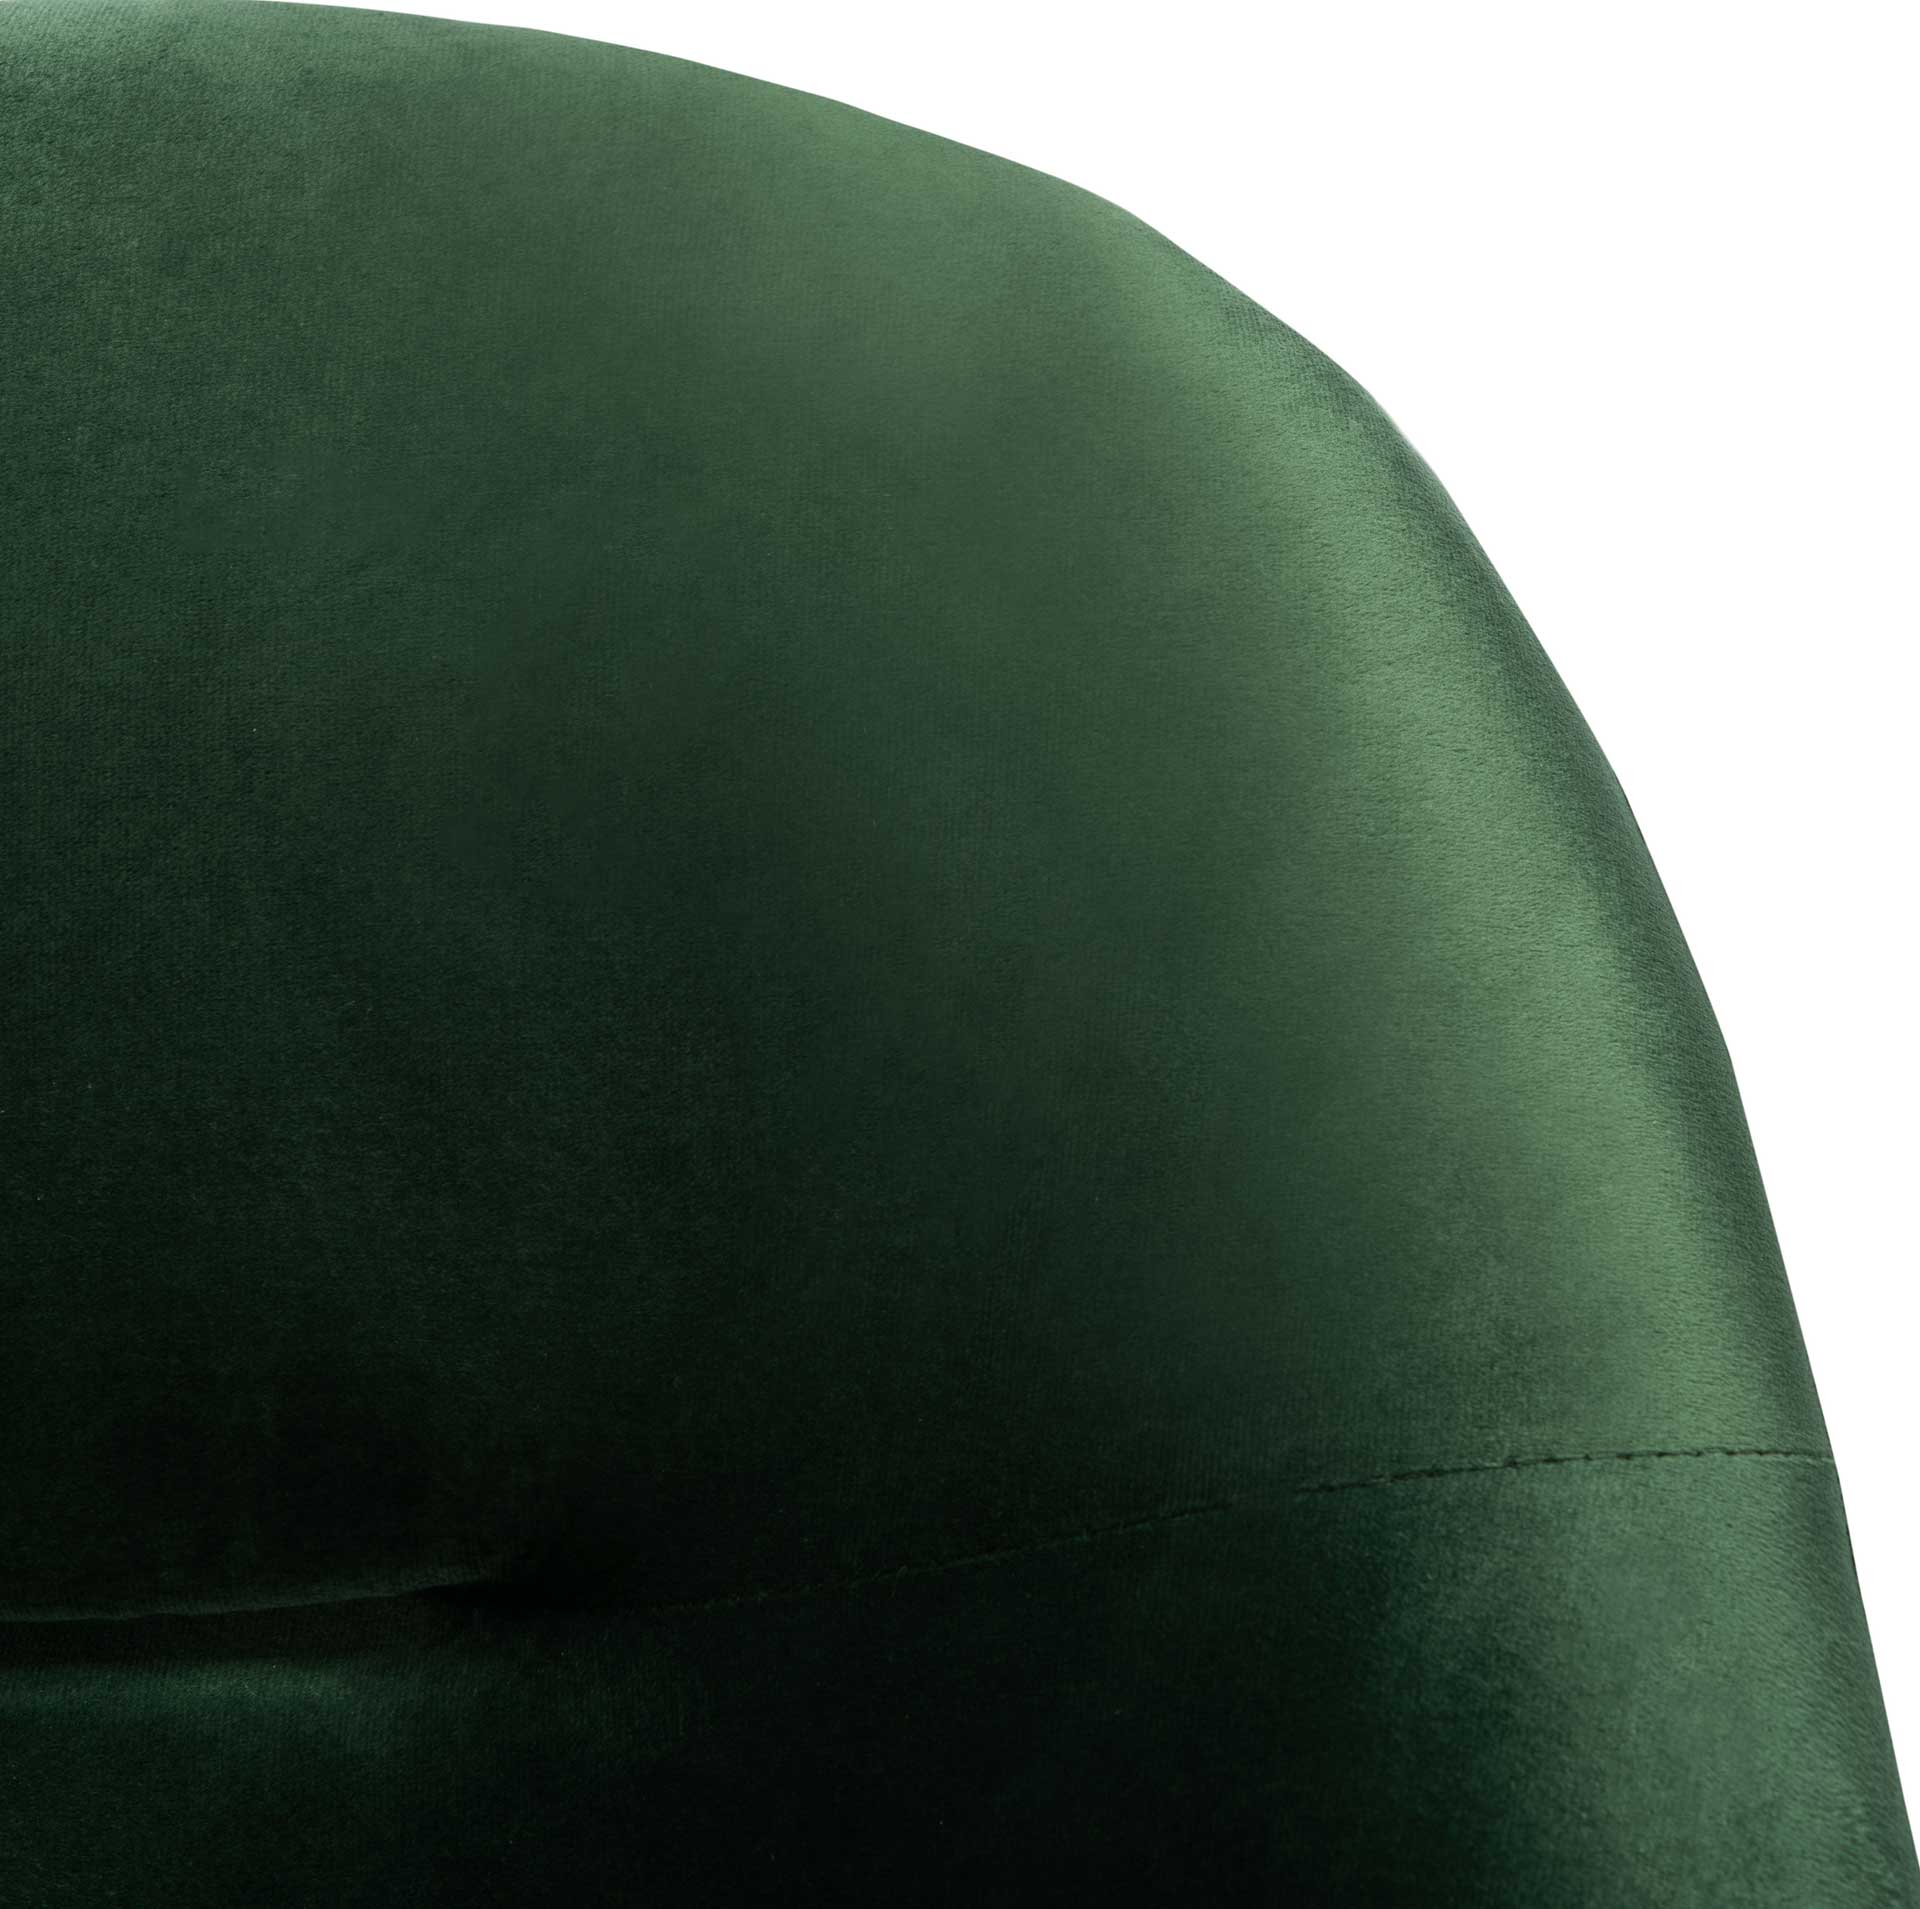 Eldon Velvet Accent Chair Malachite Green/Gold